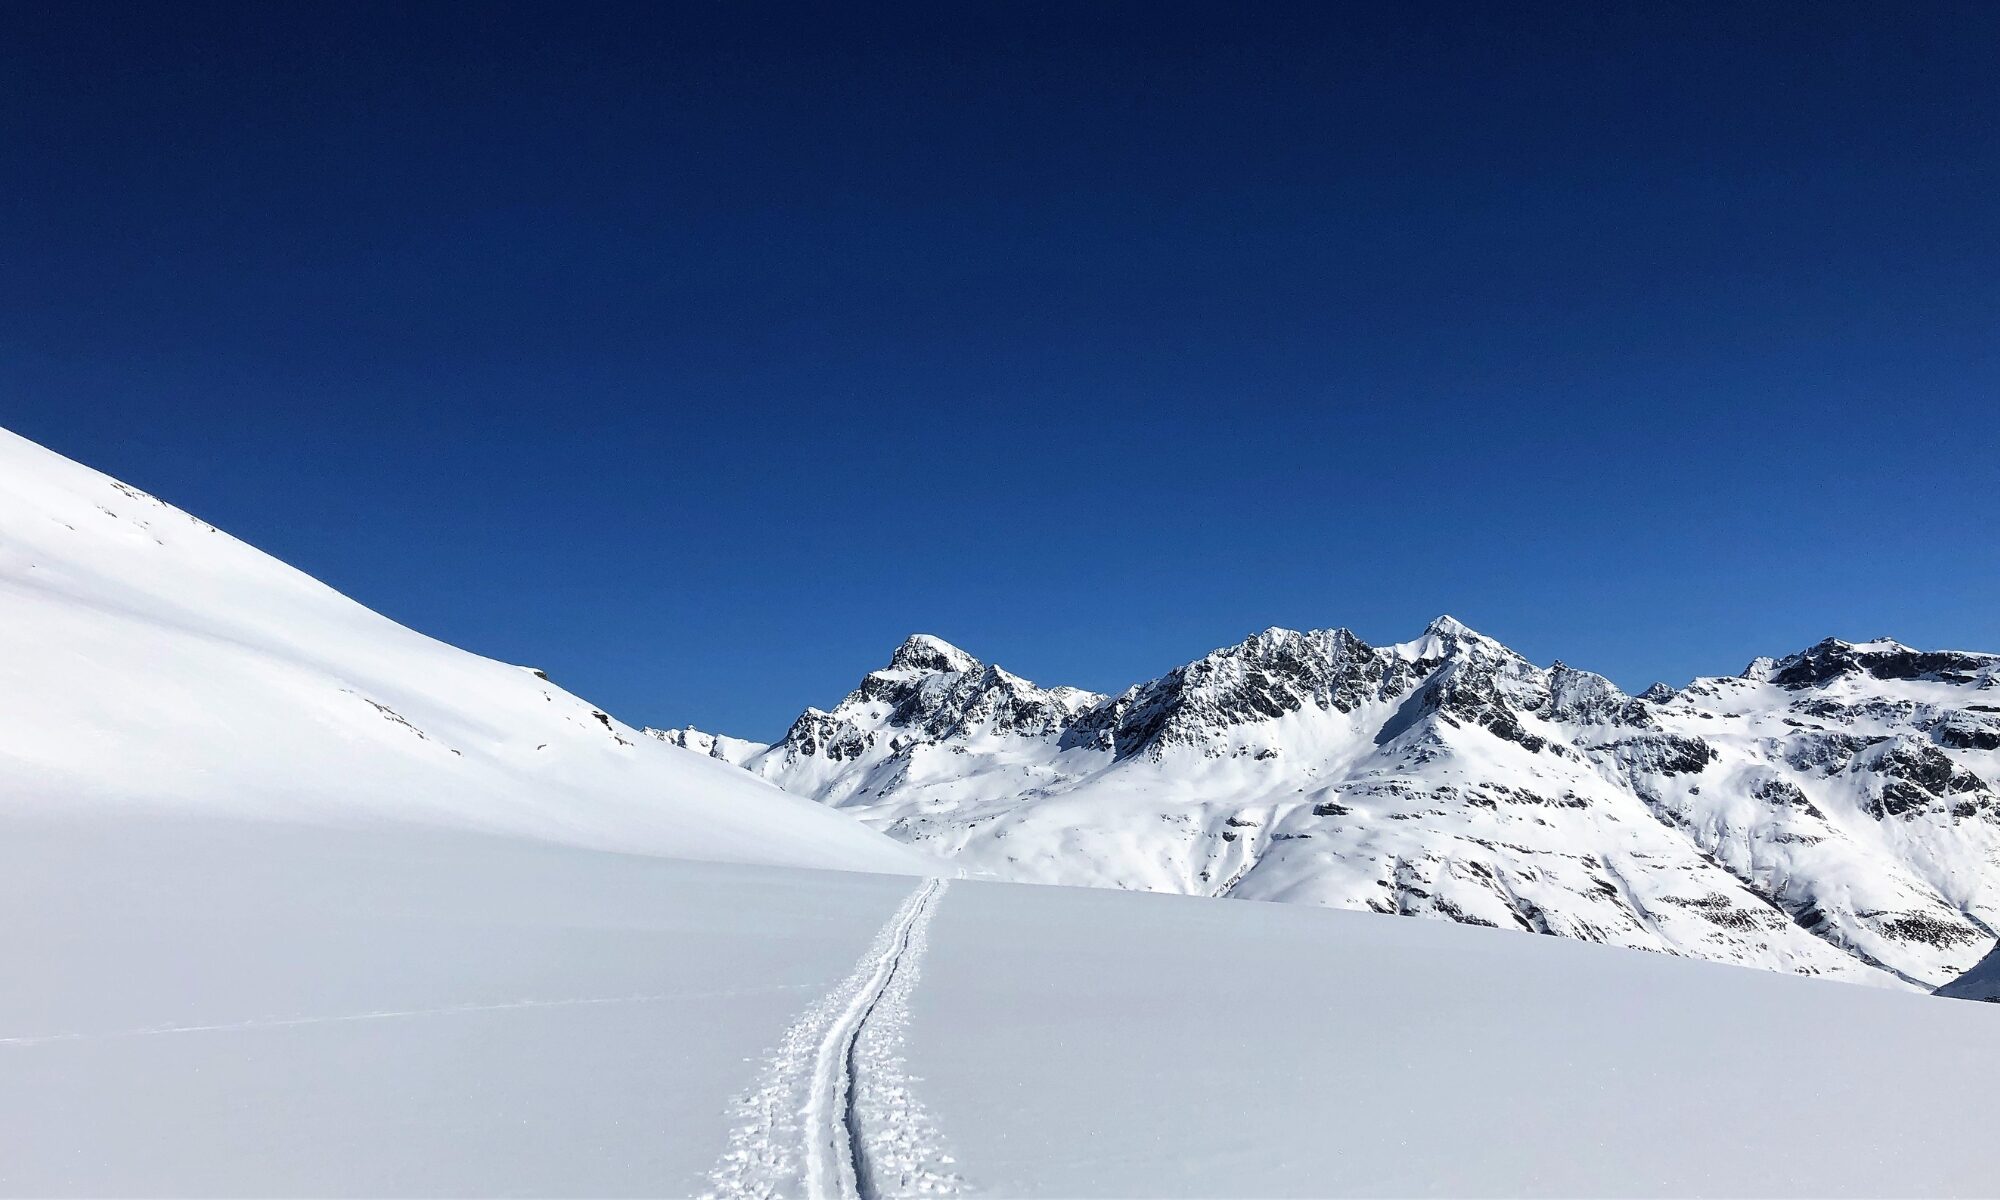 Afbudsrejser skiferie: Smukke spor i sneen på vej over bjerget.